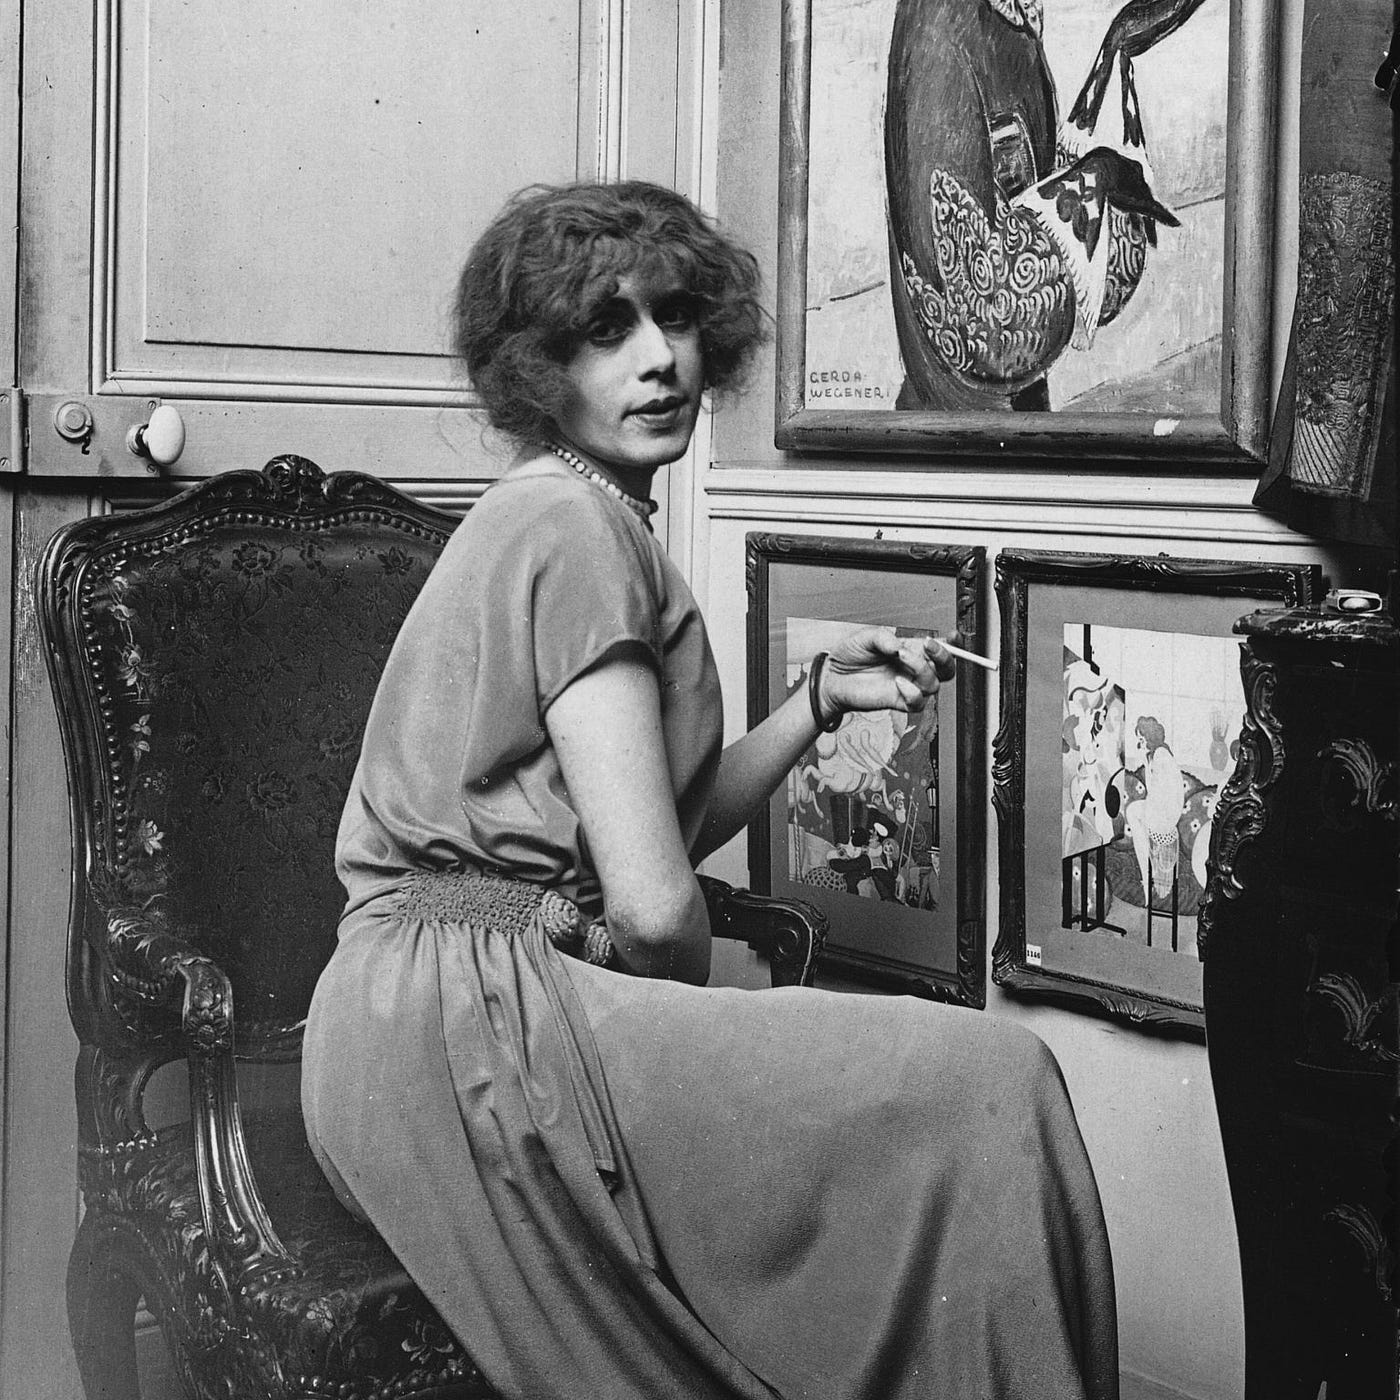 From Einar Wegener to Lili Elbe, first gender reassignment in the art world  | by Arte Original | Medium